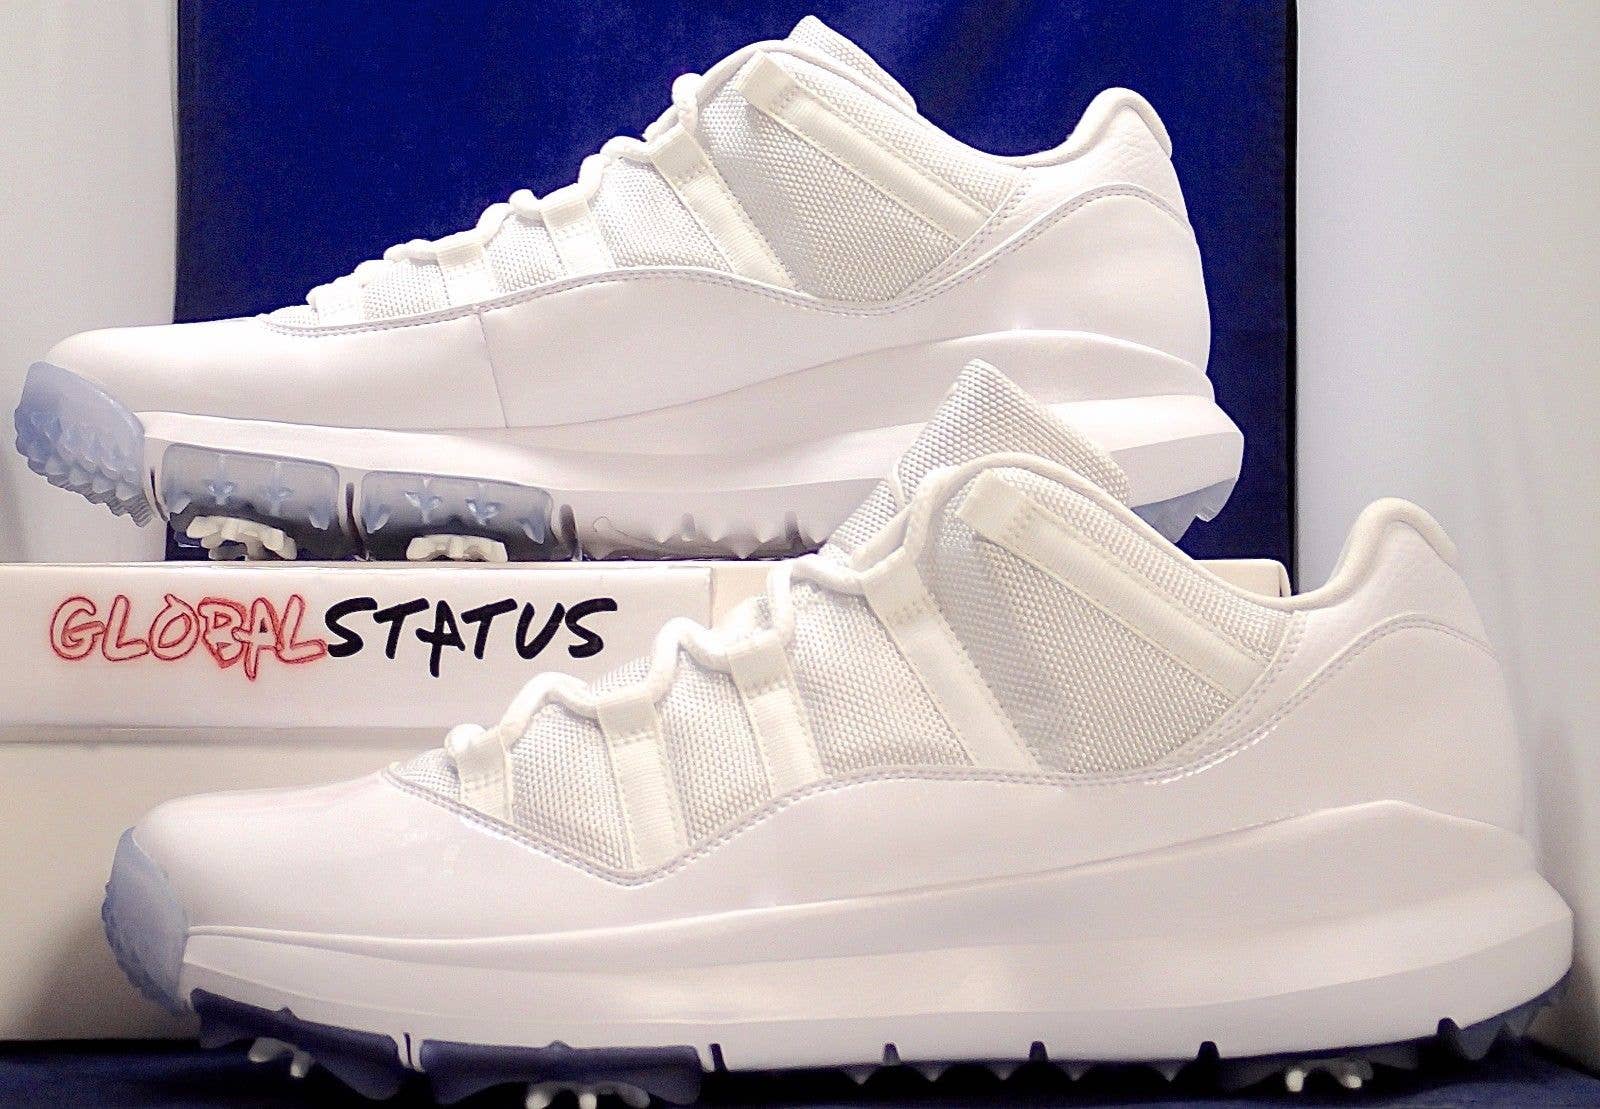 Air Jordan 11 Low White Golf Shoes Michael Jordan PE (2)